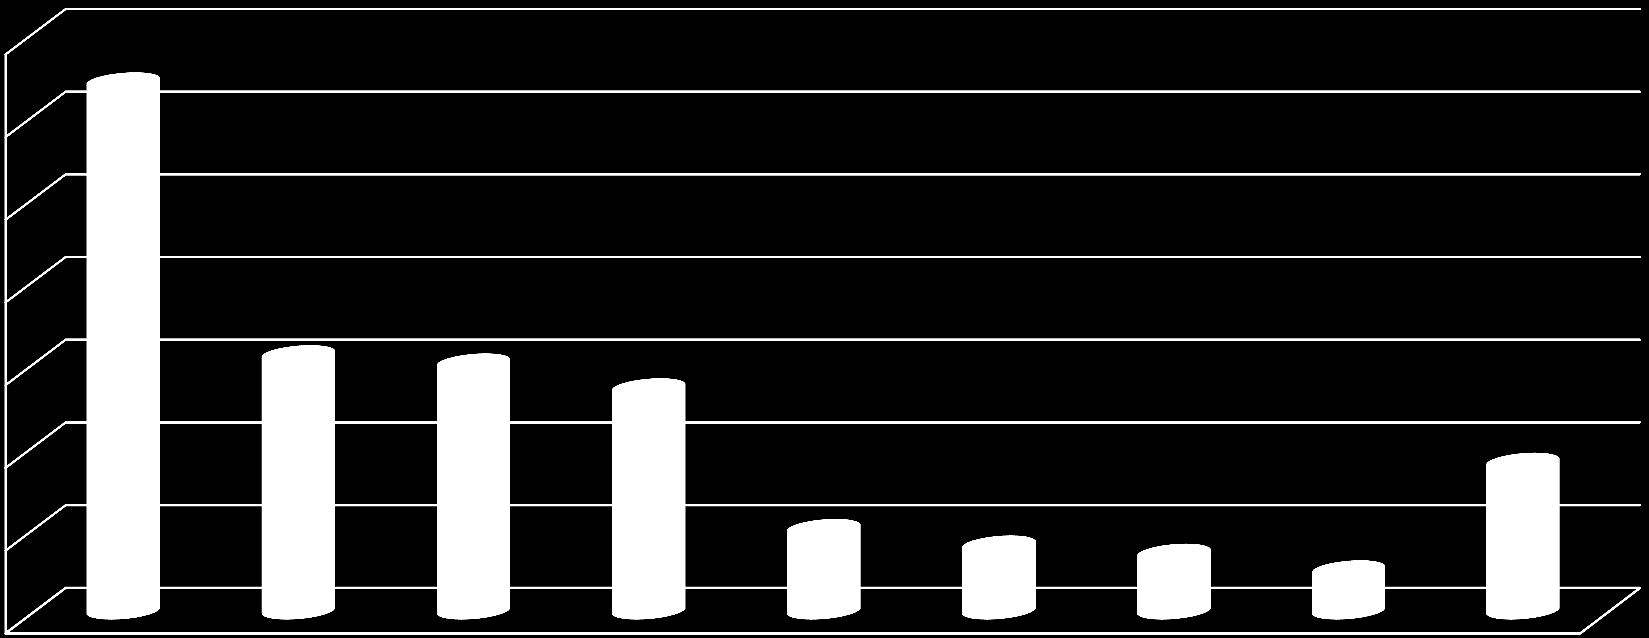 SNĚMOVNÍ VOLEBNÍ MODEL ČERVENEC-SRPEN 2013 Volební model zobrazuje odhad nejpravděpodobnějšího rozvržení podpory stran v hypotetických volbách do Sněmovny, pokud by se konaly v době dotazování.